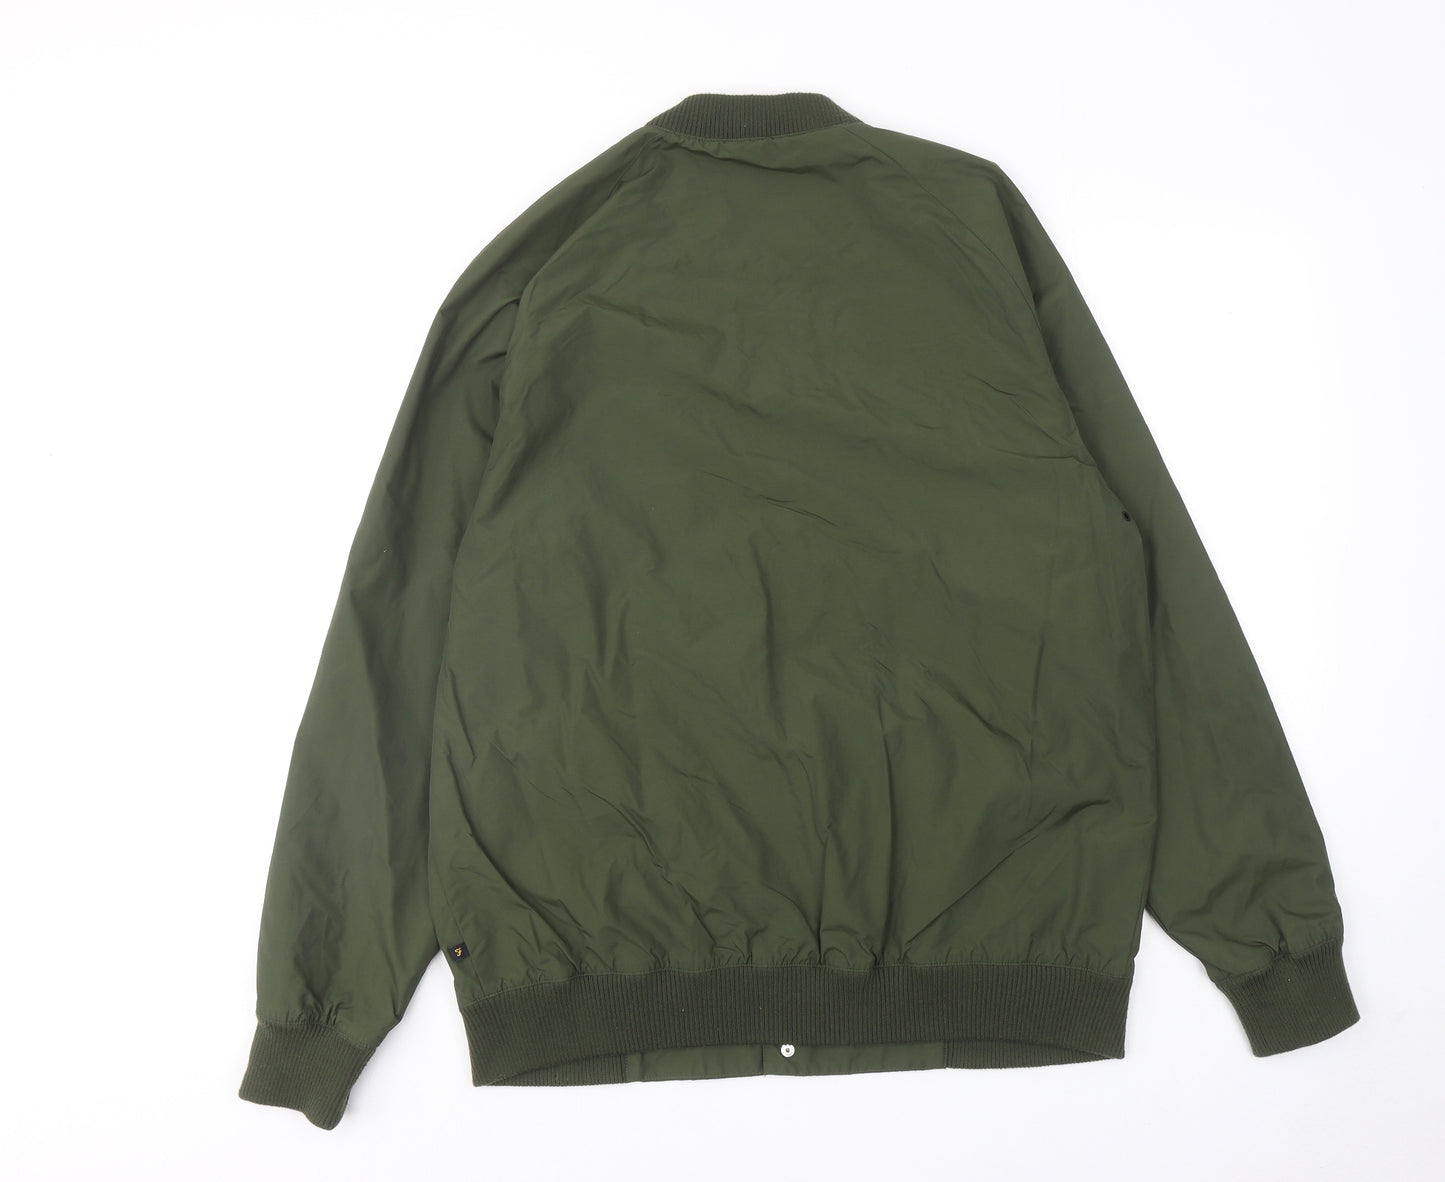 Farah Mens Green Bomber Jacket Jacket Size XL Zip